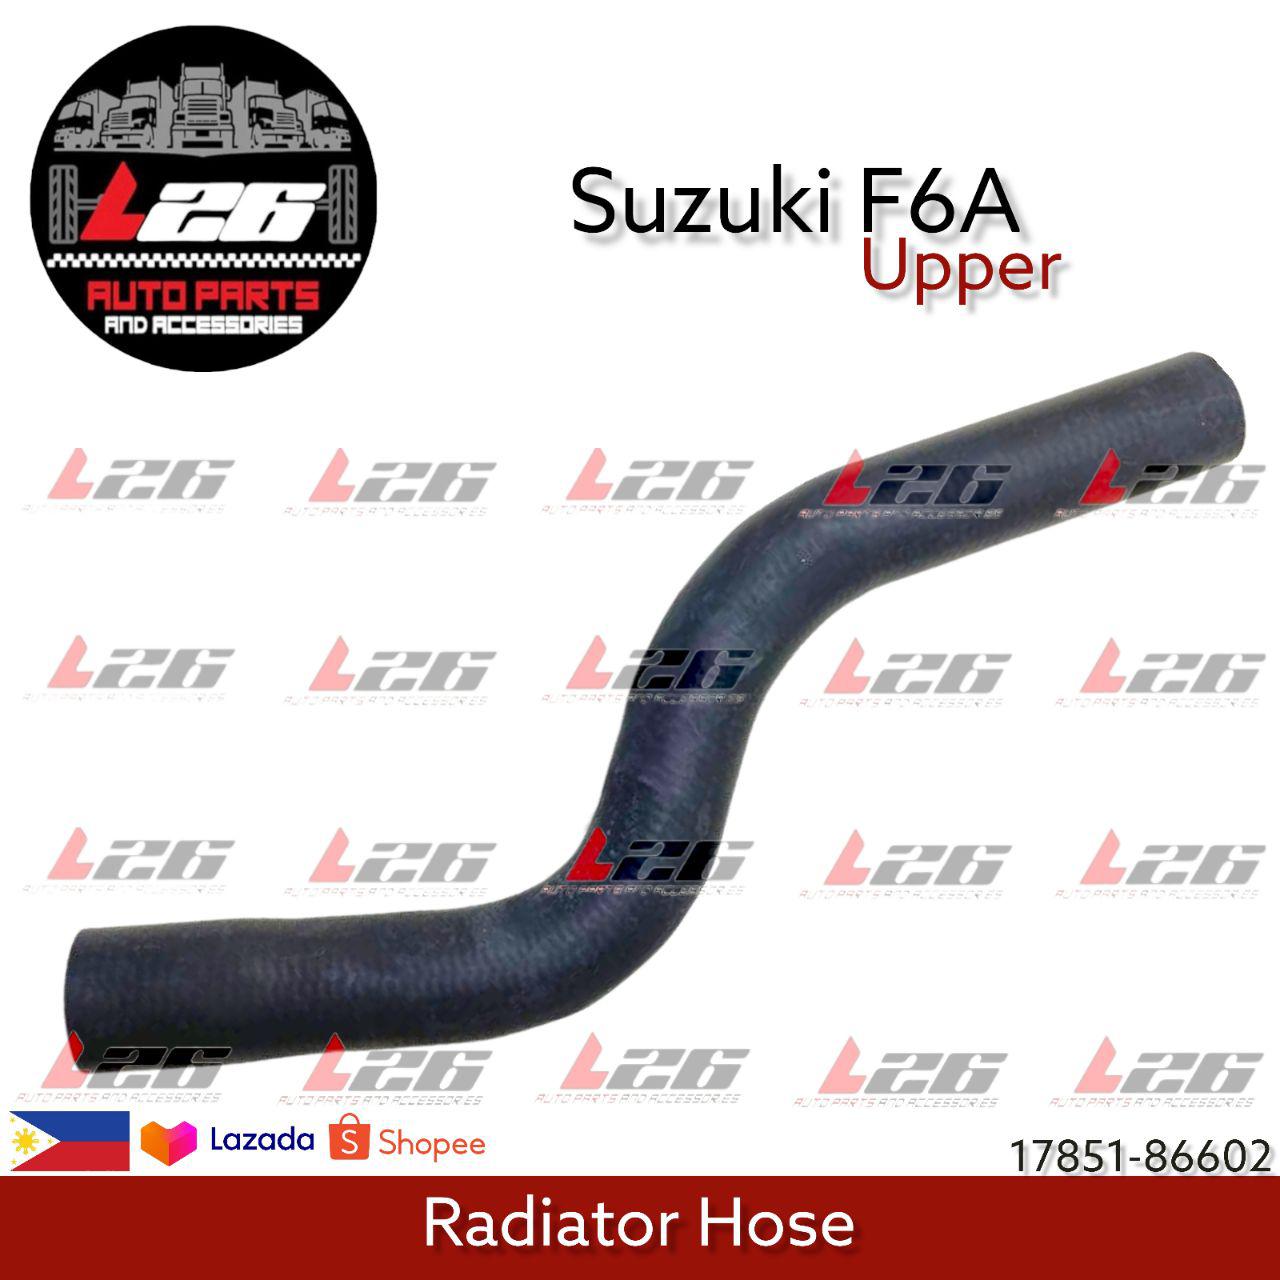 Shop F6a Radiator Hose Upper online